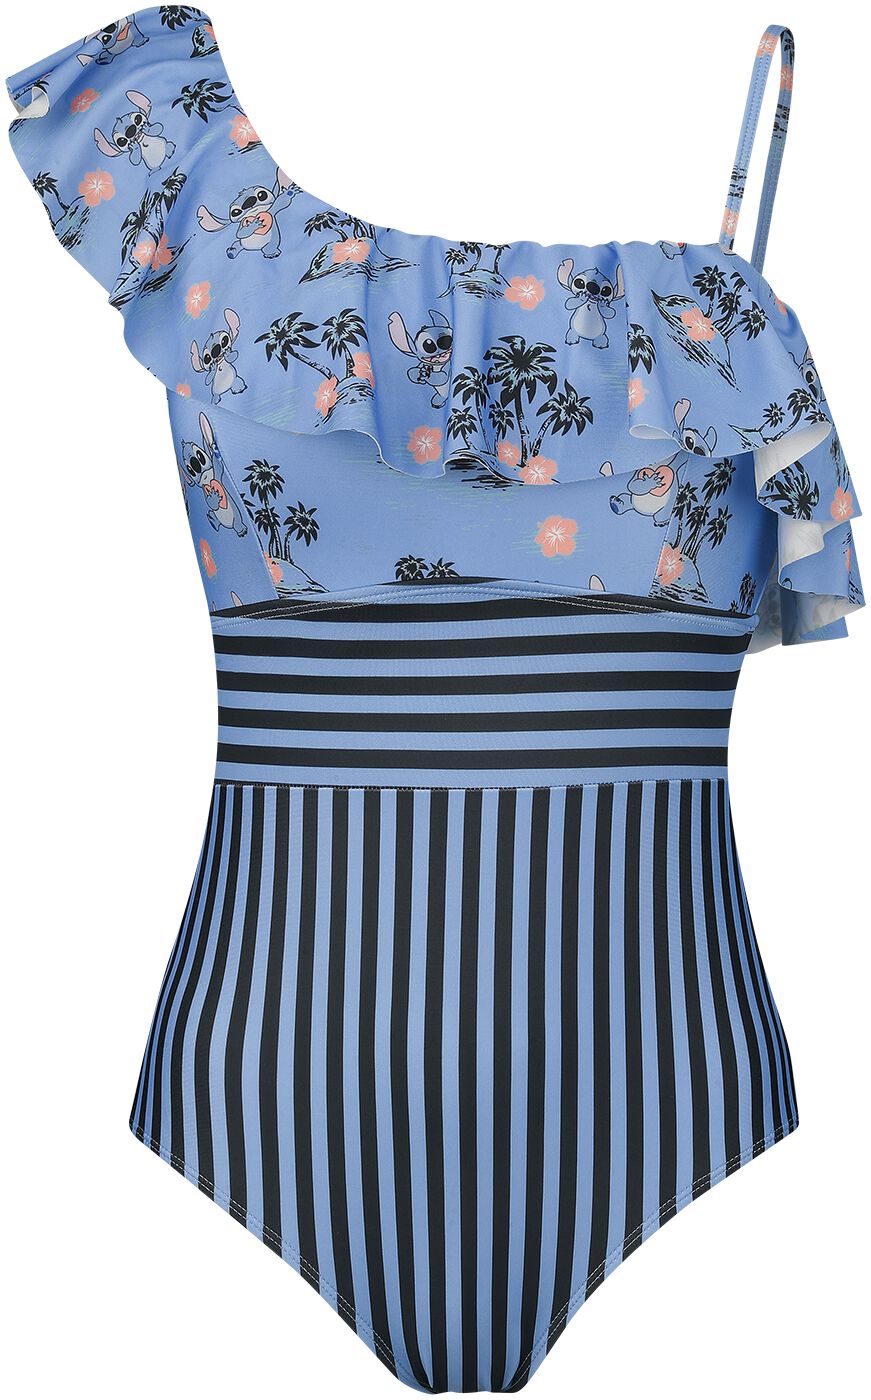 Lilo Stitch Disney Badeanzug Tropical S bis XXL für Damen Größe M multicolor EMP exklusives Merchandise!  - Onlineshop EMP